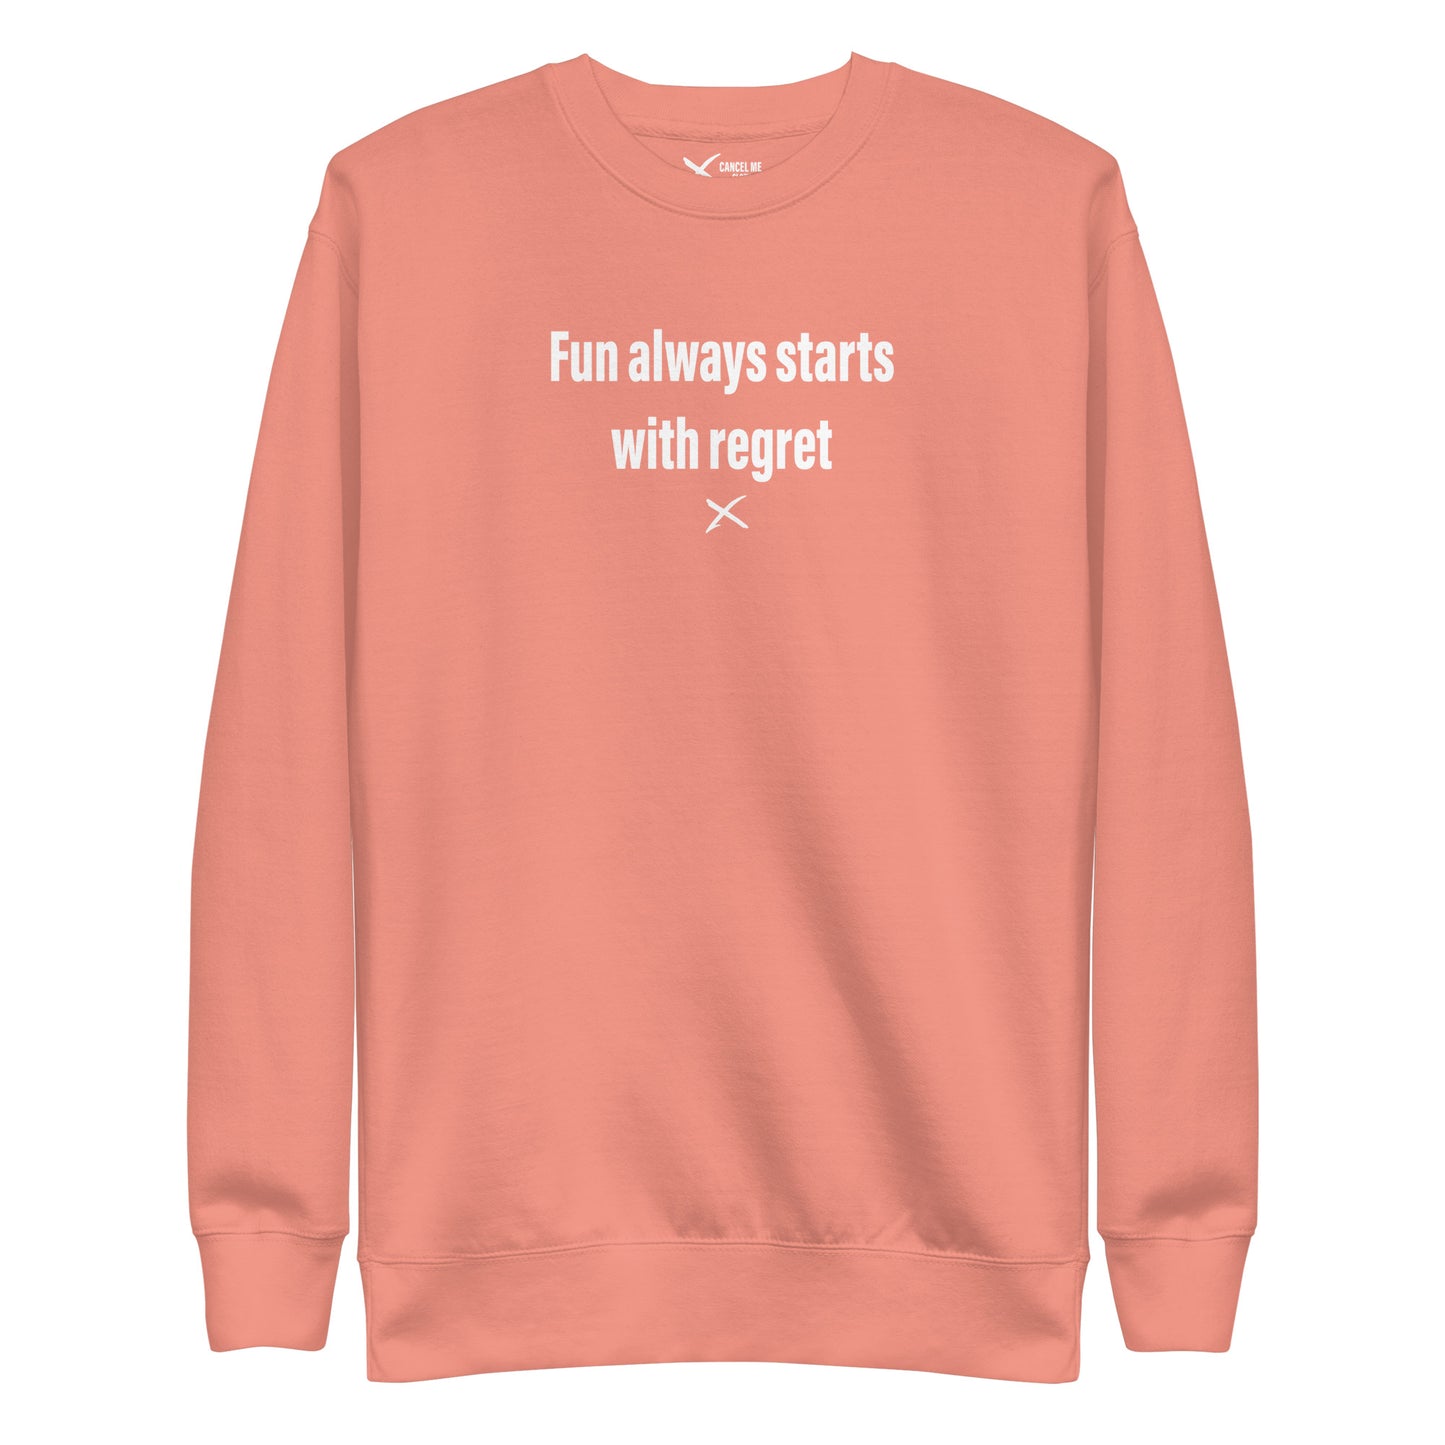 Fun always starts with regret - Sweatshirt